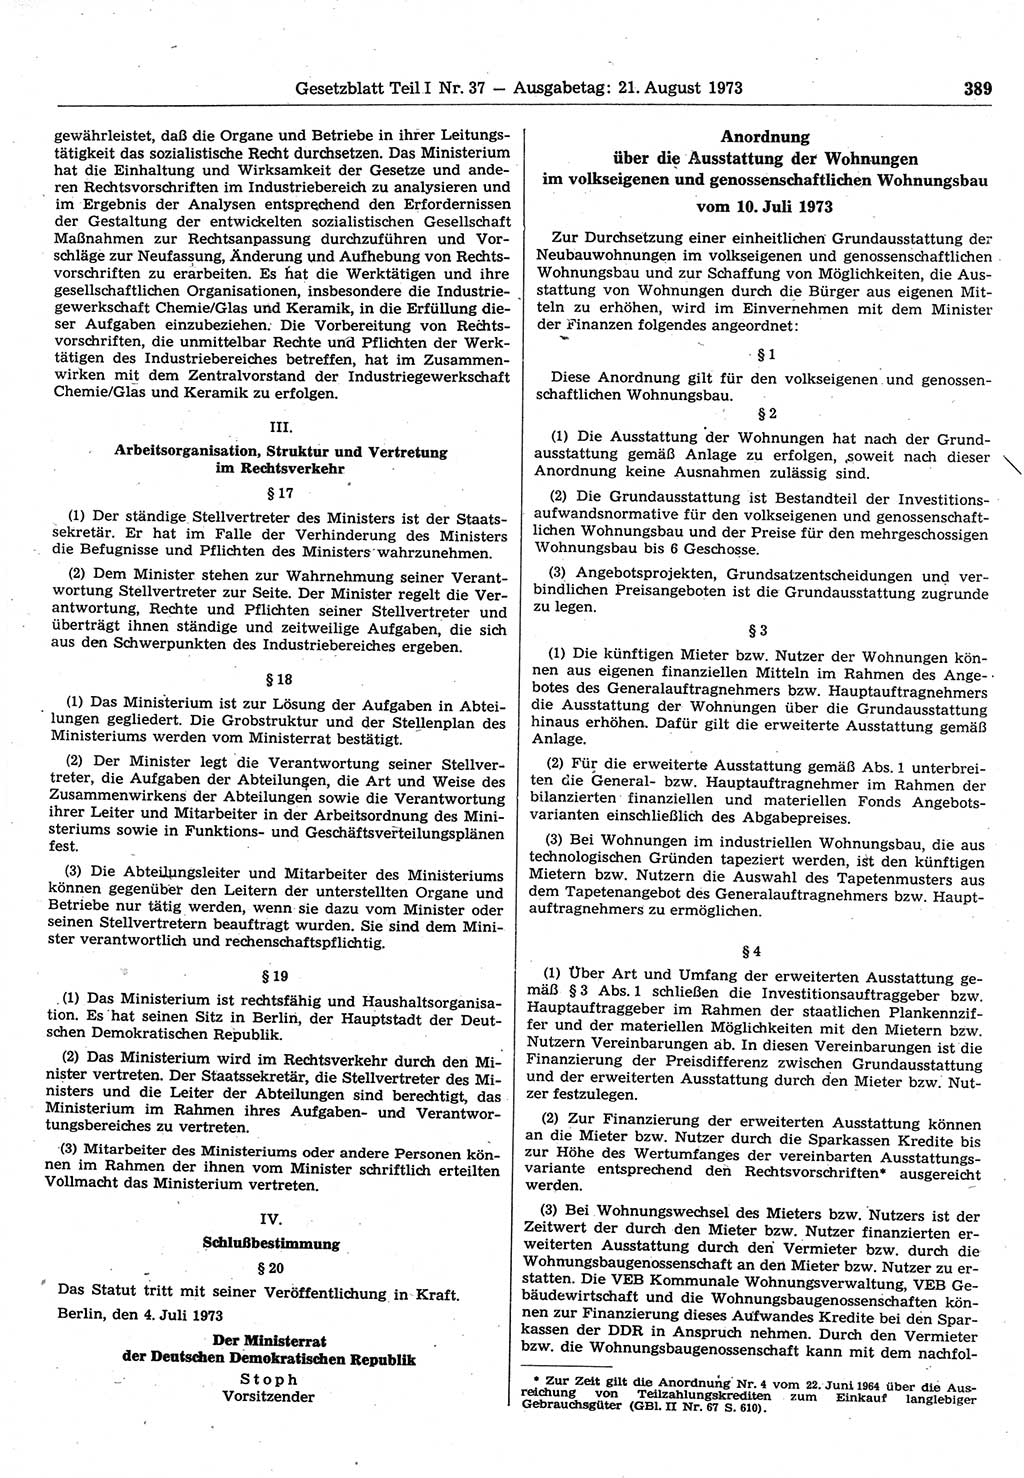 Gesetzblatt (GBl.) der Deutschen Demokratischen Republik (DDR) Teil Ⅰ 1973, Seite 389 (GBl. DDR Ⅰ 1973, S. 389)